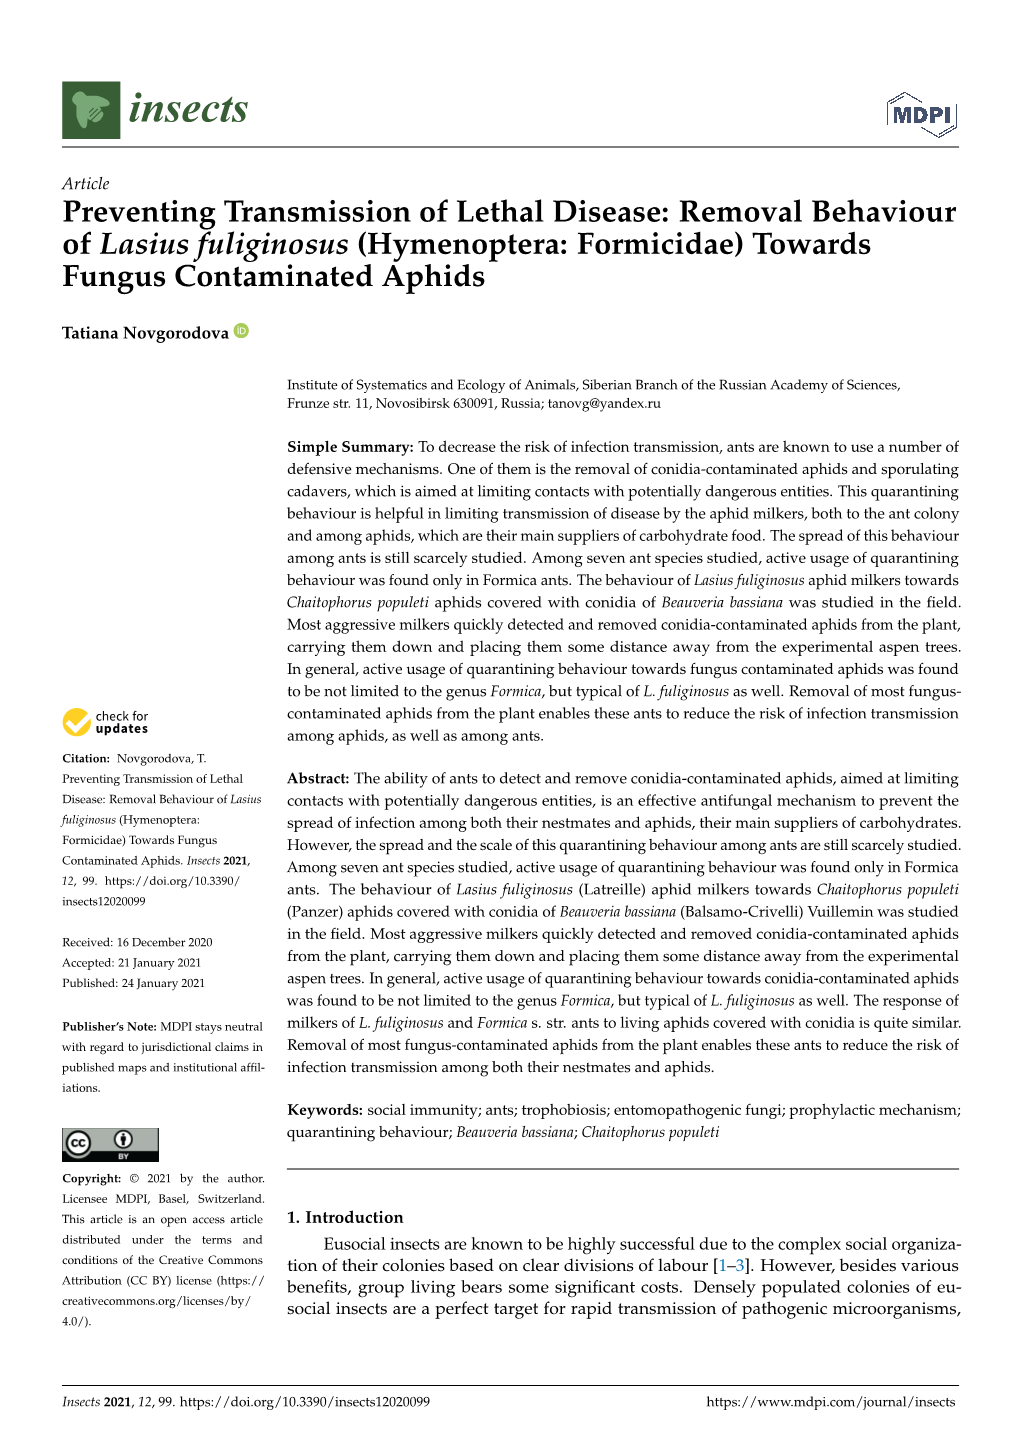 Removal Behaviour of Lasius Fuliginosus (Hymenoptera: Formicidae) Towards Fungus Contaminated Aphids